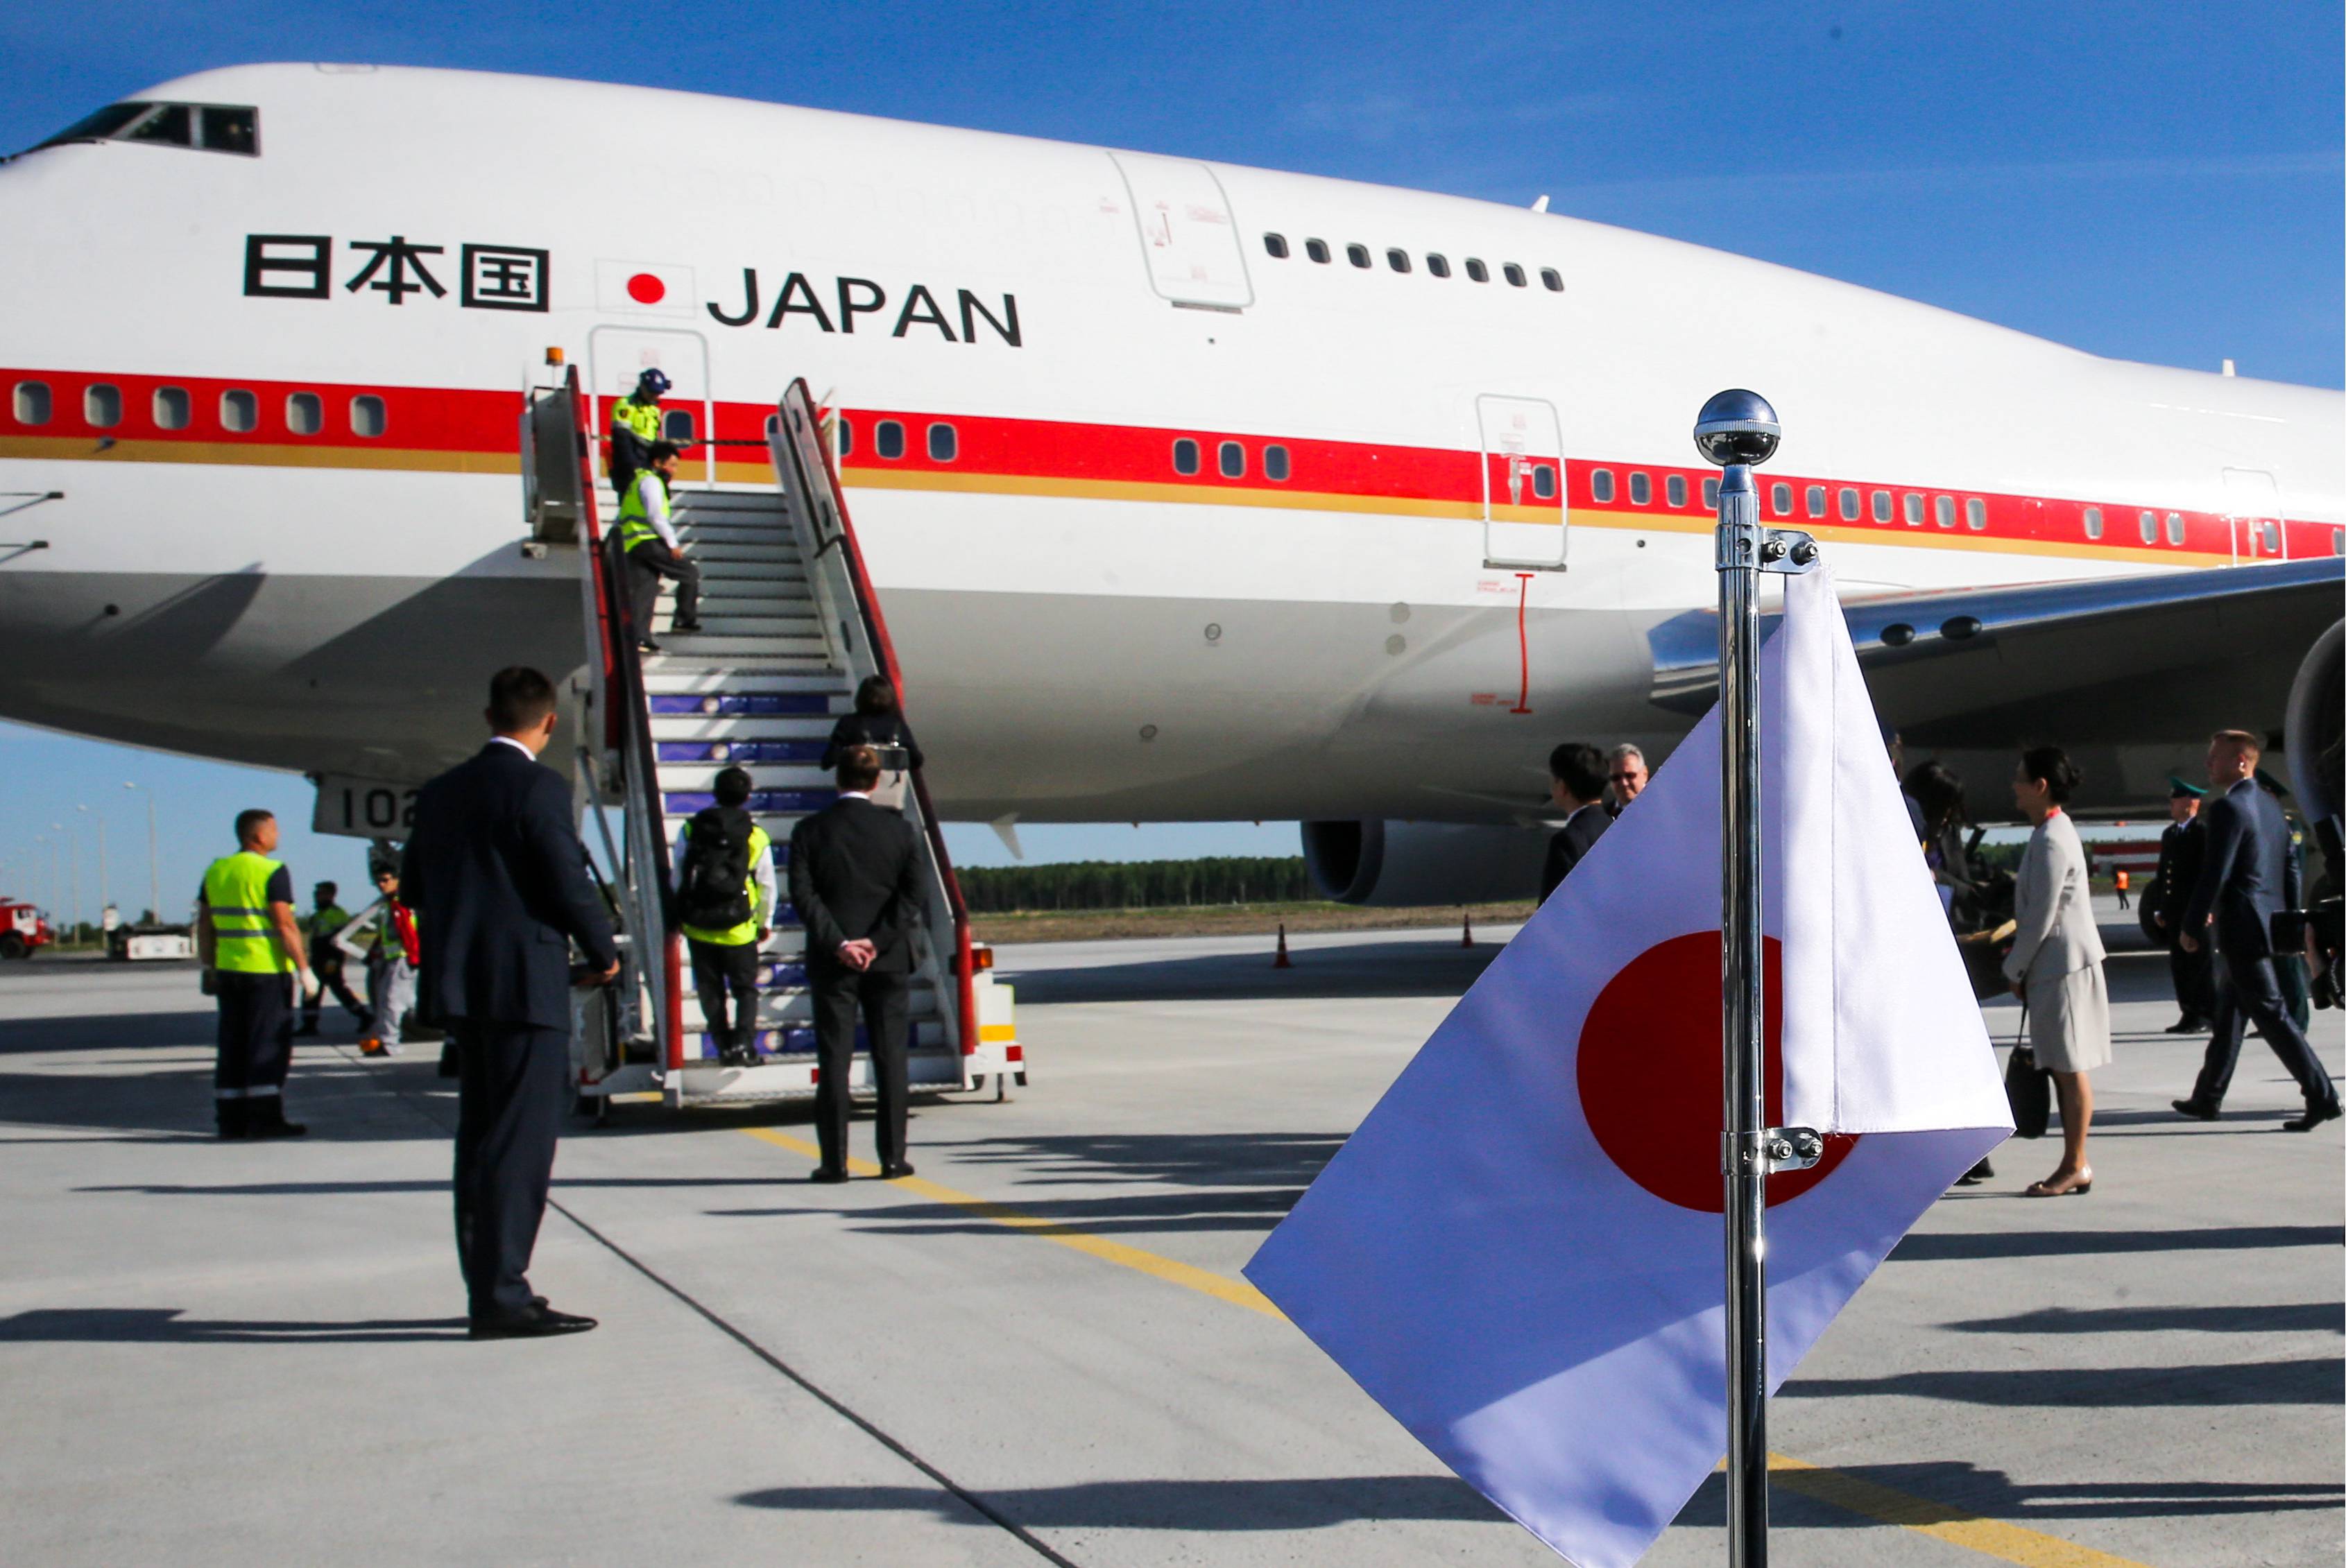 航空器交易媒体controller发布消息:日本政府今年刚退役的专机"空军